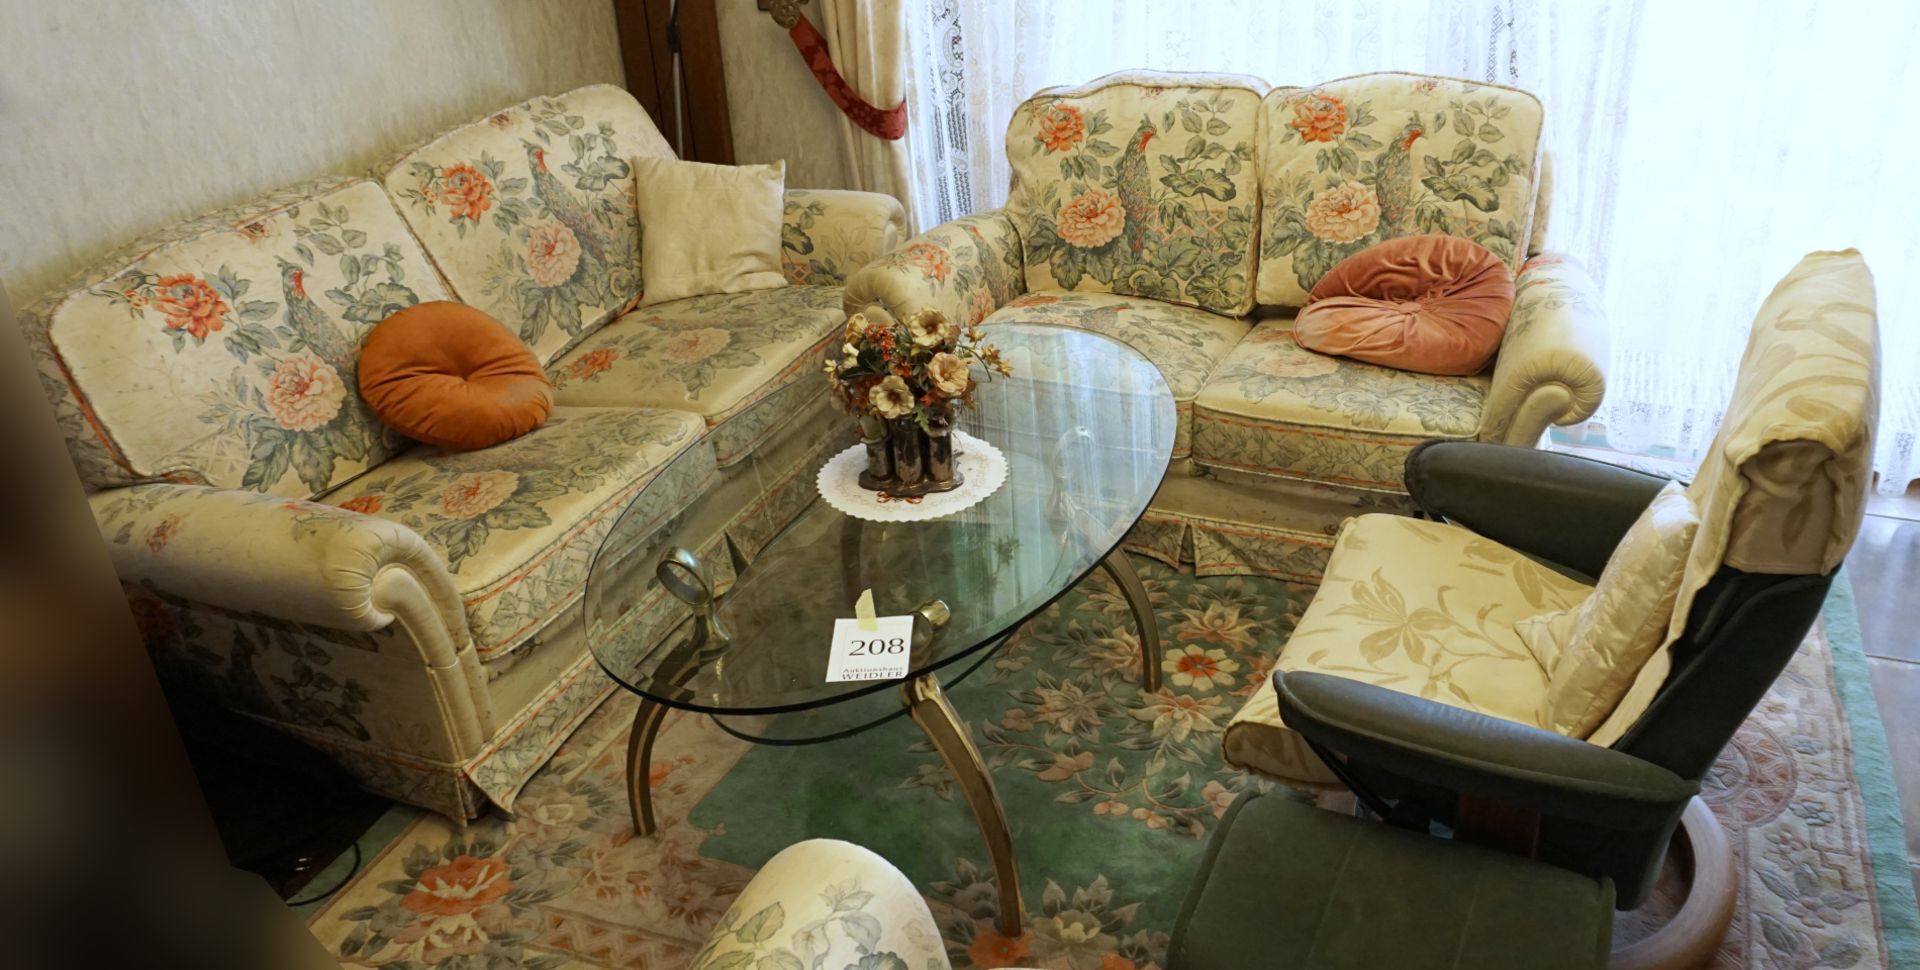 1 Couchgarnitur mit ovalem Glastisch, Chinateppich, Vorhänge, Deckenlampe und 2 Wandlampen, Asp.